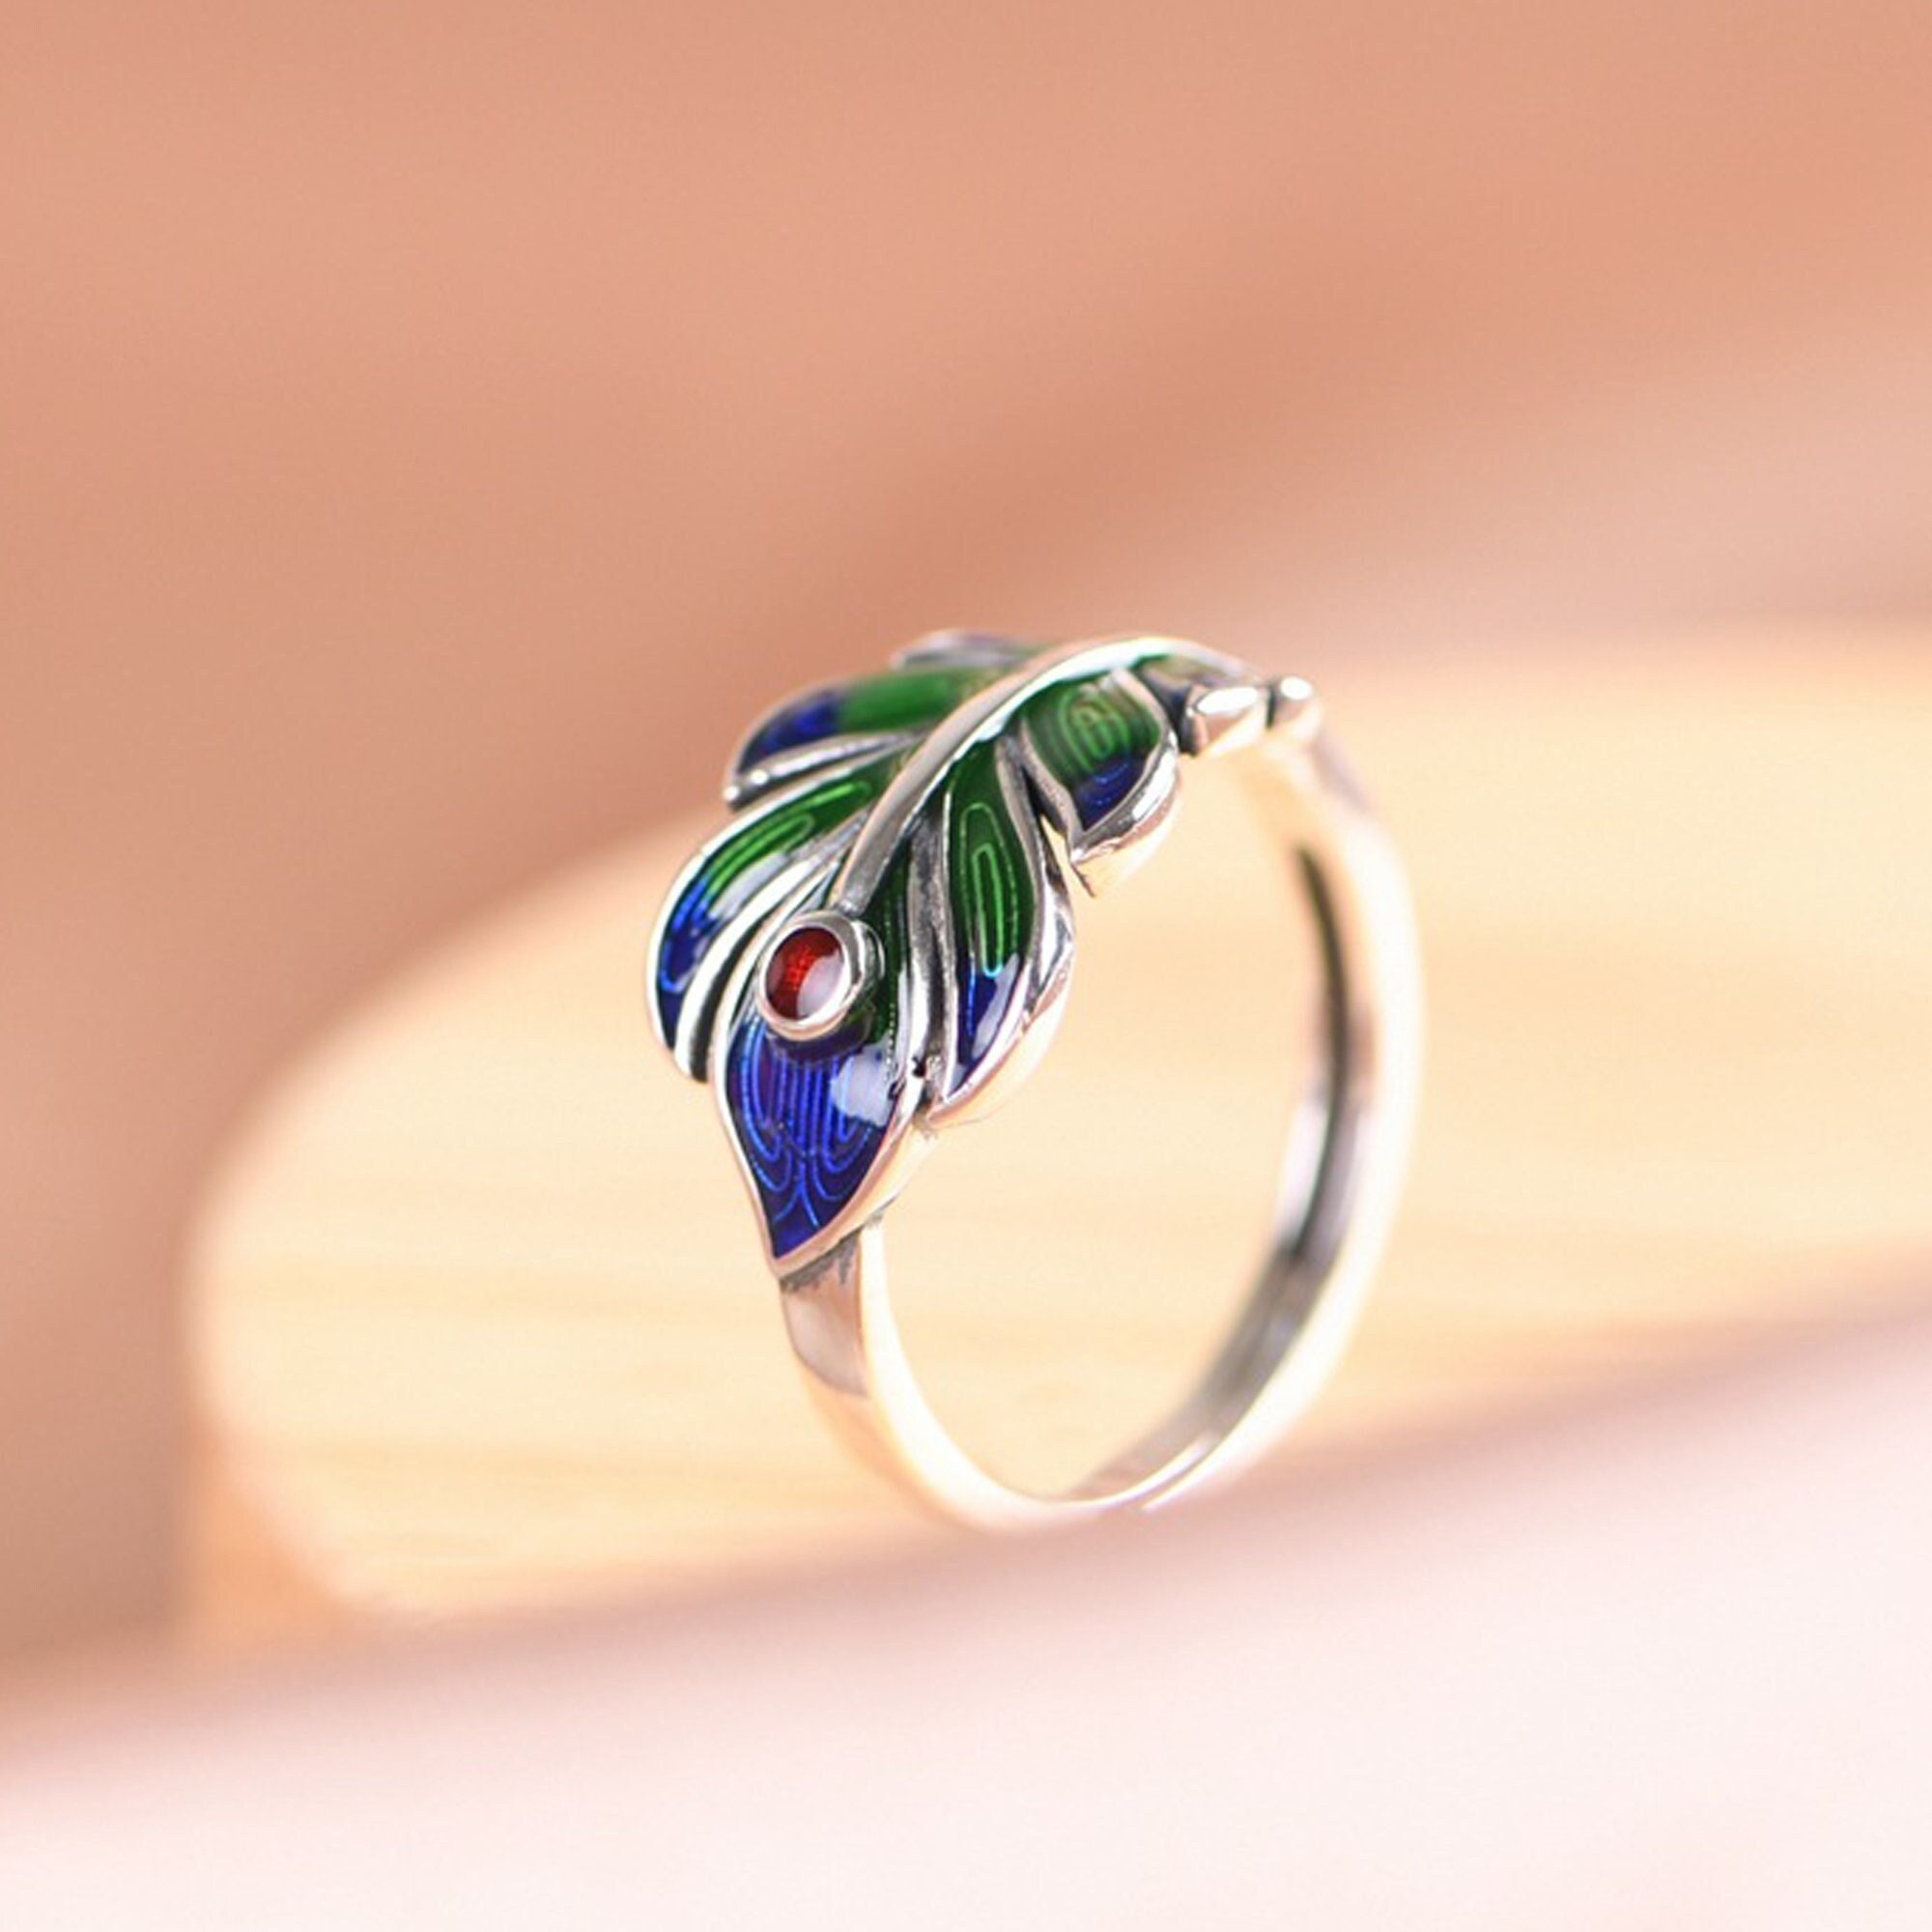 Silver Ring In Peacock Design With Green Stone - Eldorado